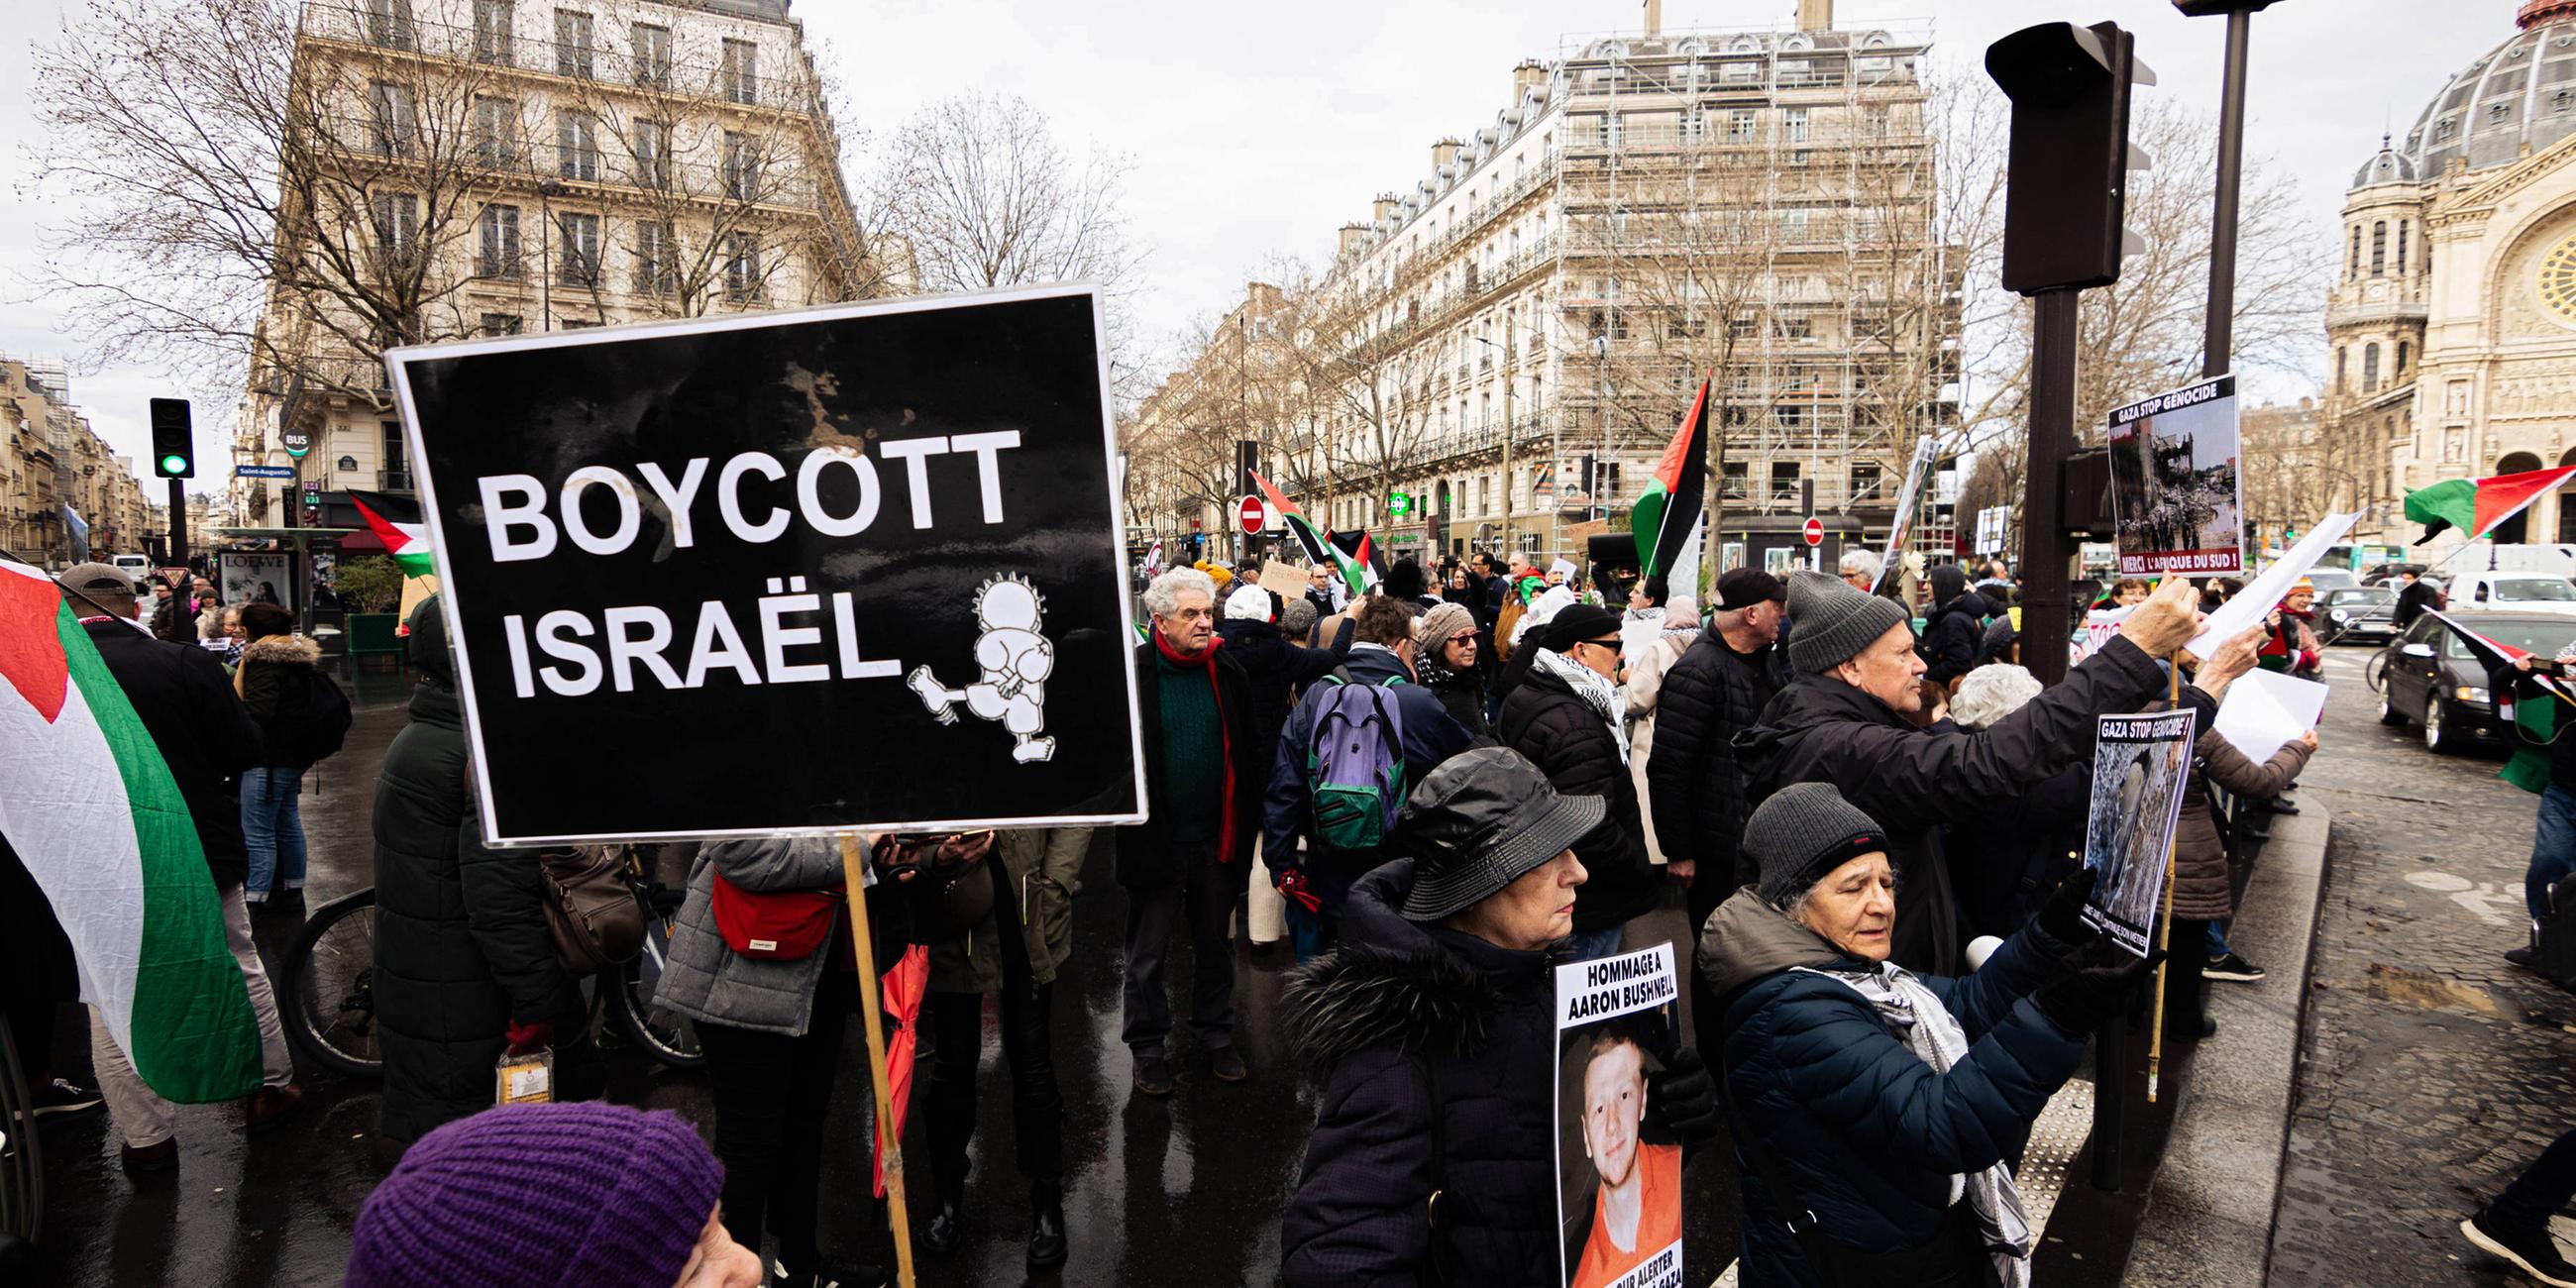 Demonstration gegen Israel in Paris. Eine Menschenmenge mit palästinensischen Flaggen und Schildern. Auf einem steht: Boycott Israel.